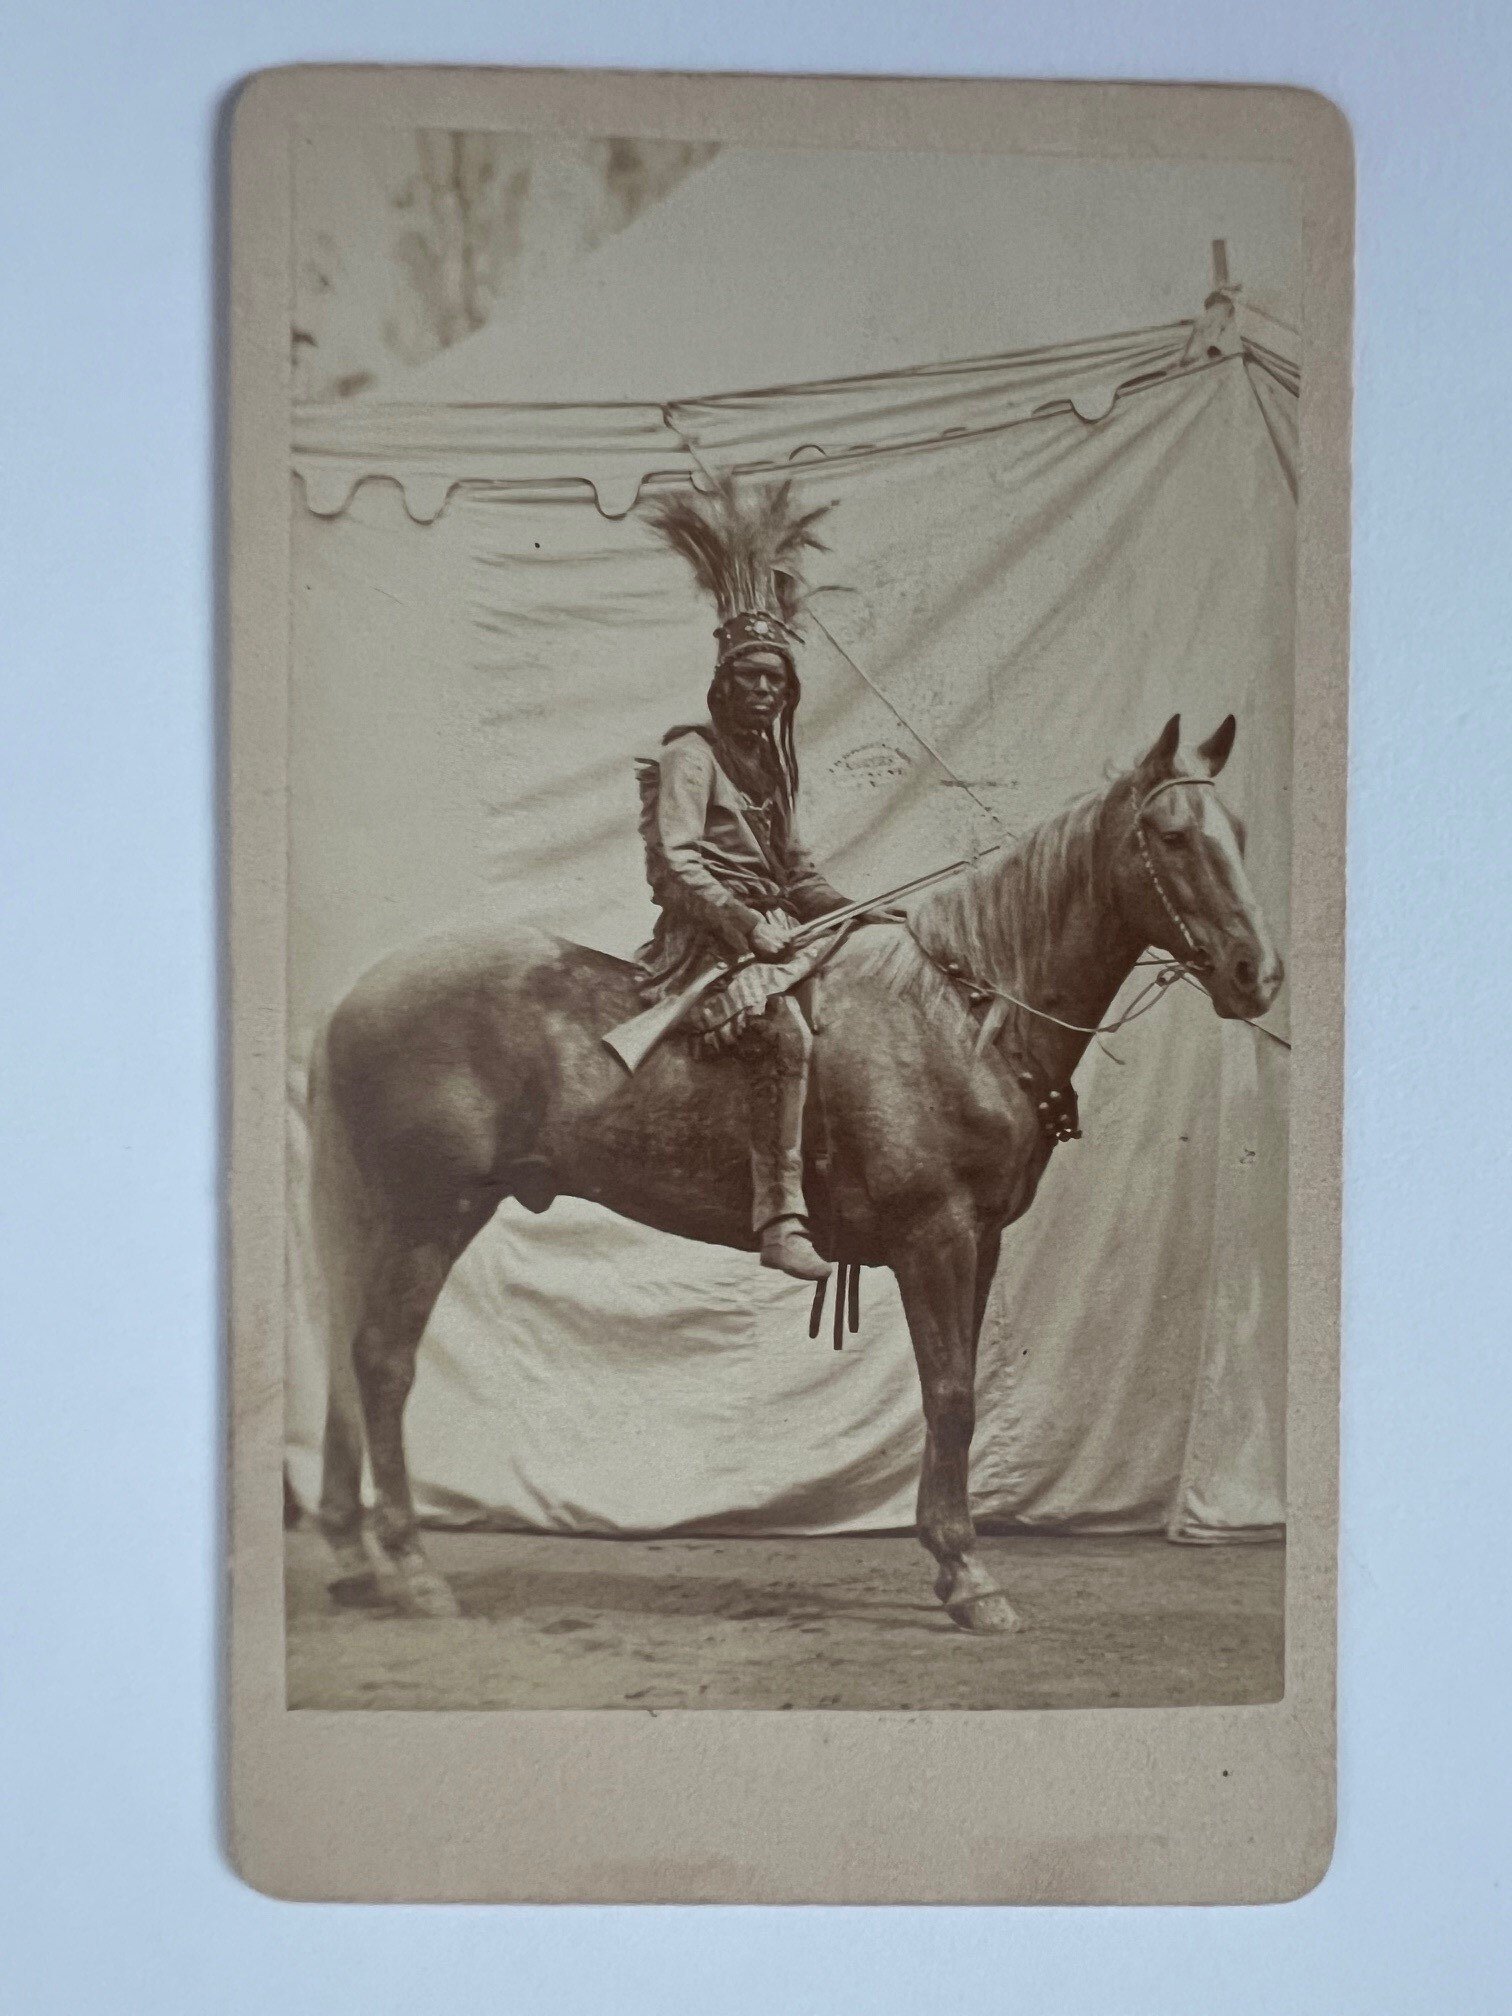 CdV, J. Bamberger, Frankfurt, Indianer, 1879. (Taunus-Rhein-Main - Regionalgeschichtliche Sammlung Dr. Stefan Naas CC BY-NC-SA)